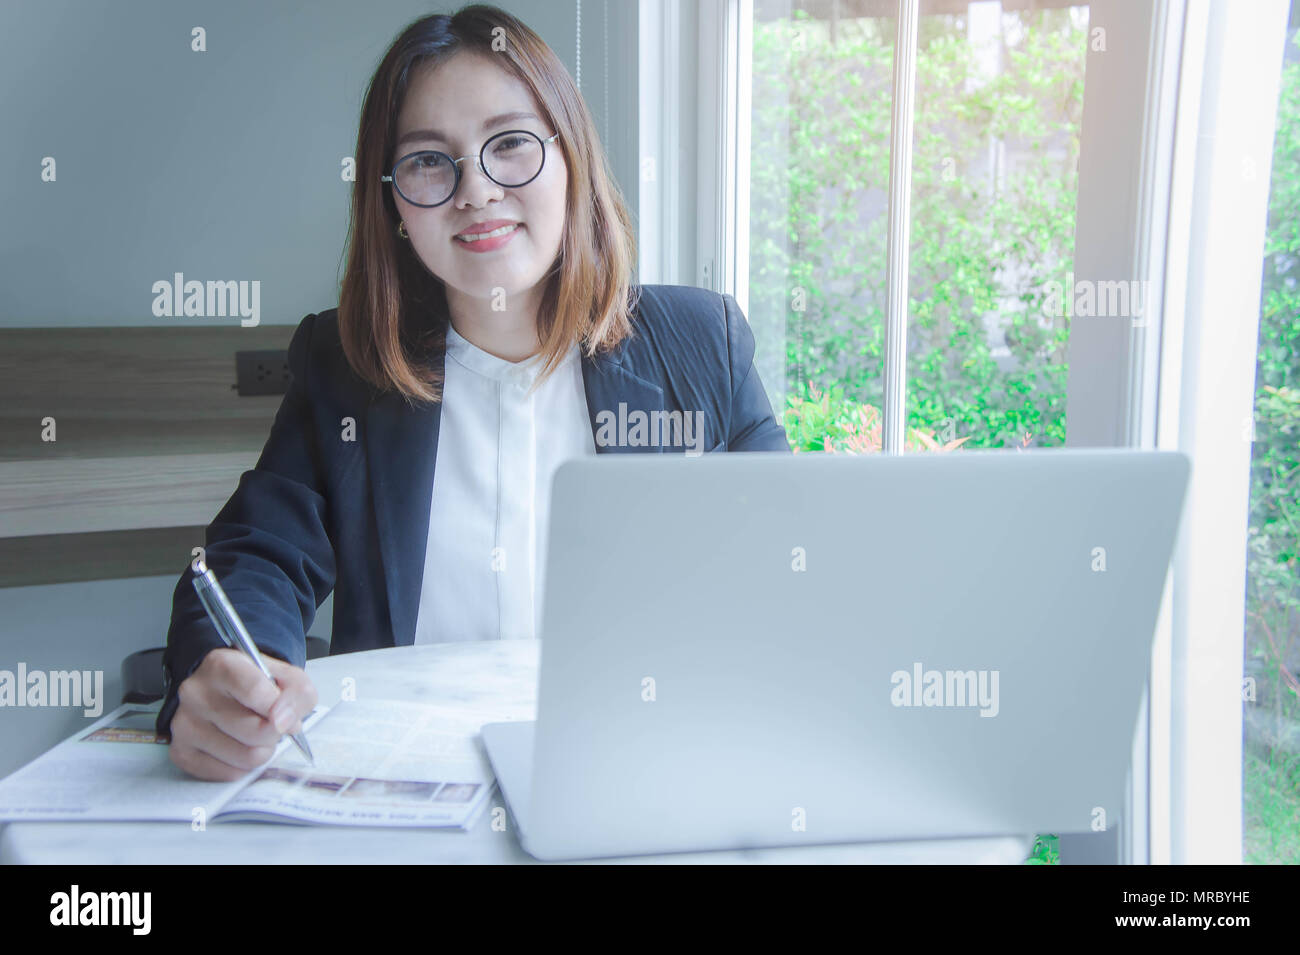 Junge Geschäftsfrau im asiatischen Stil lächelnd und glücklich das Arbeiten mit einem Notebook und dem Internet zu finden und per e-mail Daten, Buchhaltung, analytische Summa senden Stockfoto